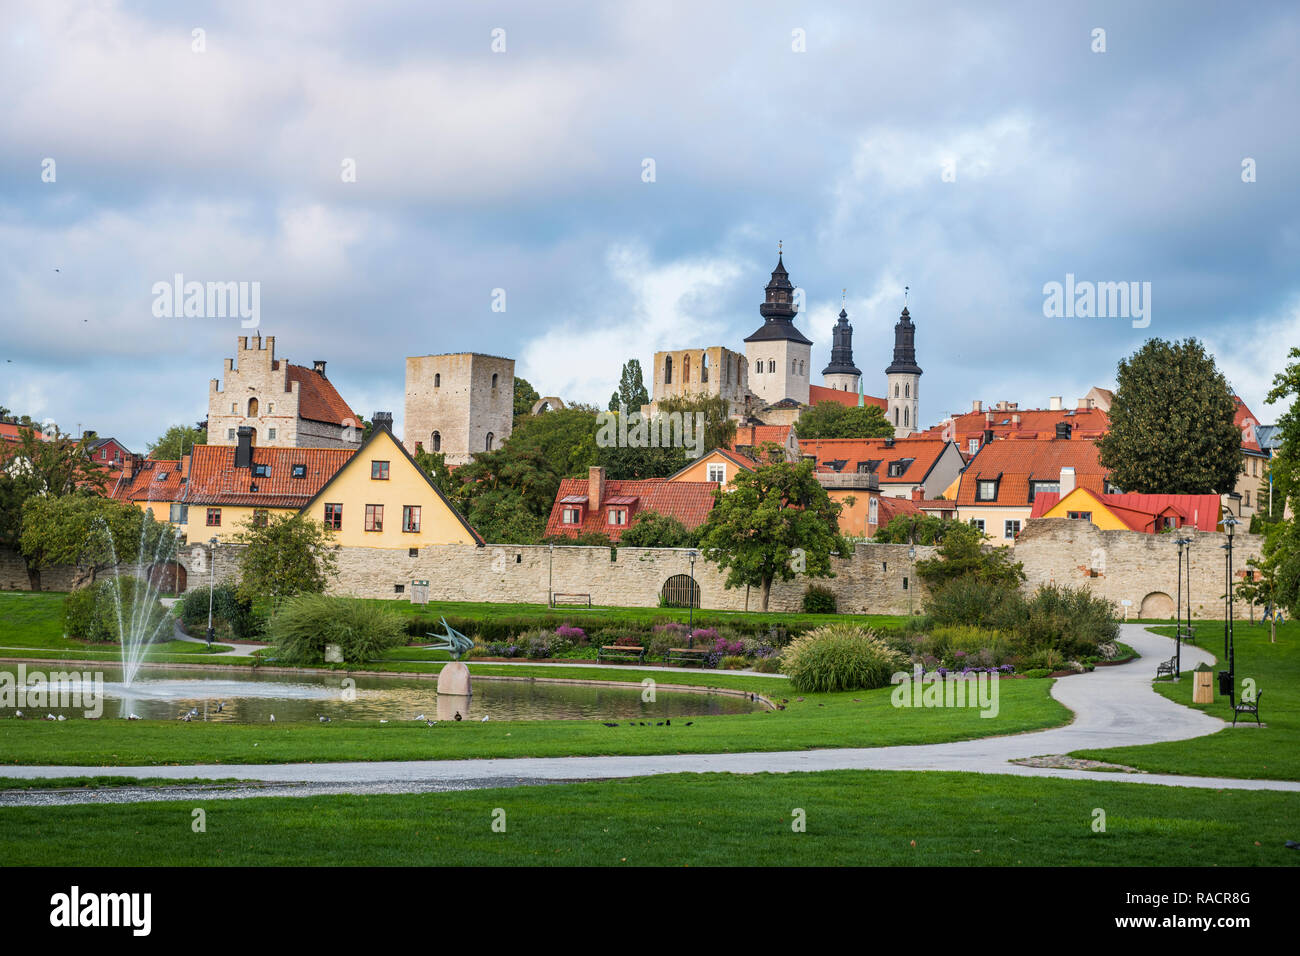 La ville de Visby, UNESCO World Heritage Site, Gotland, Suède, Scandinavie, Europe Banque D'Images